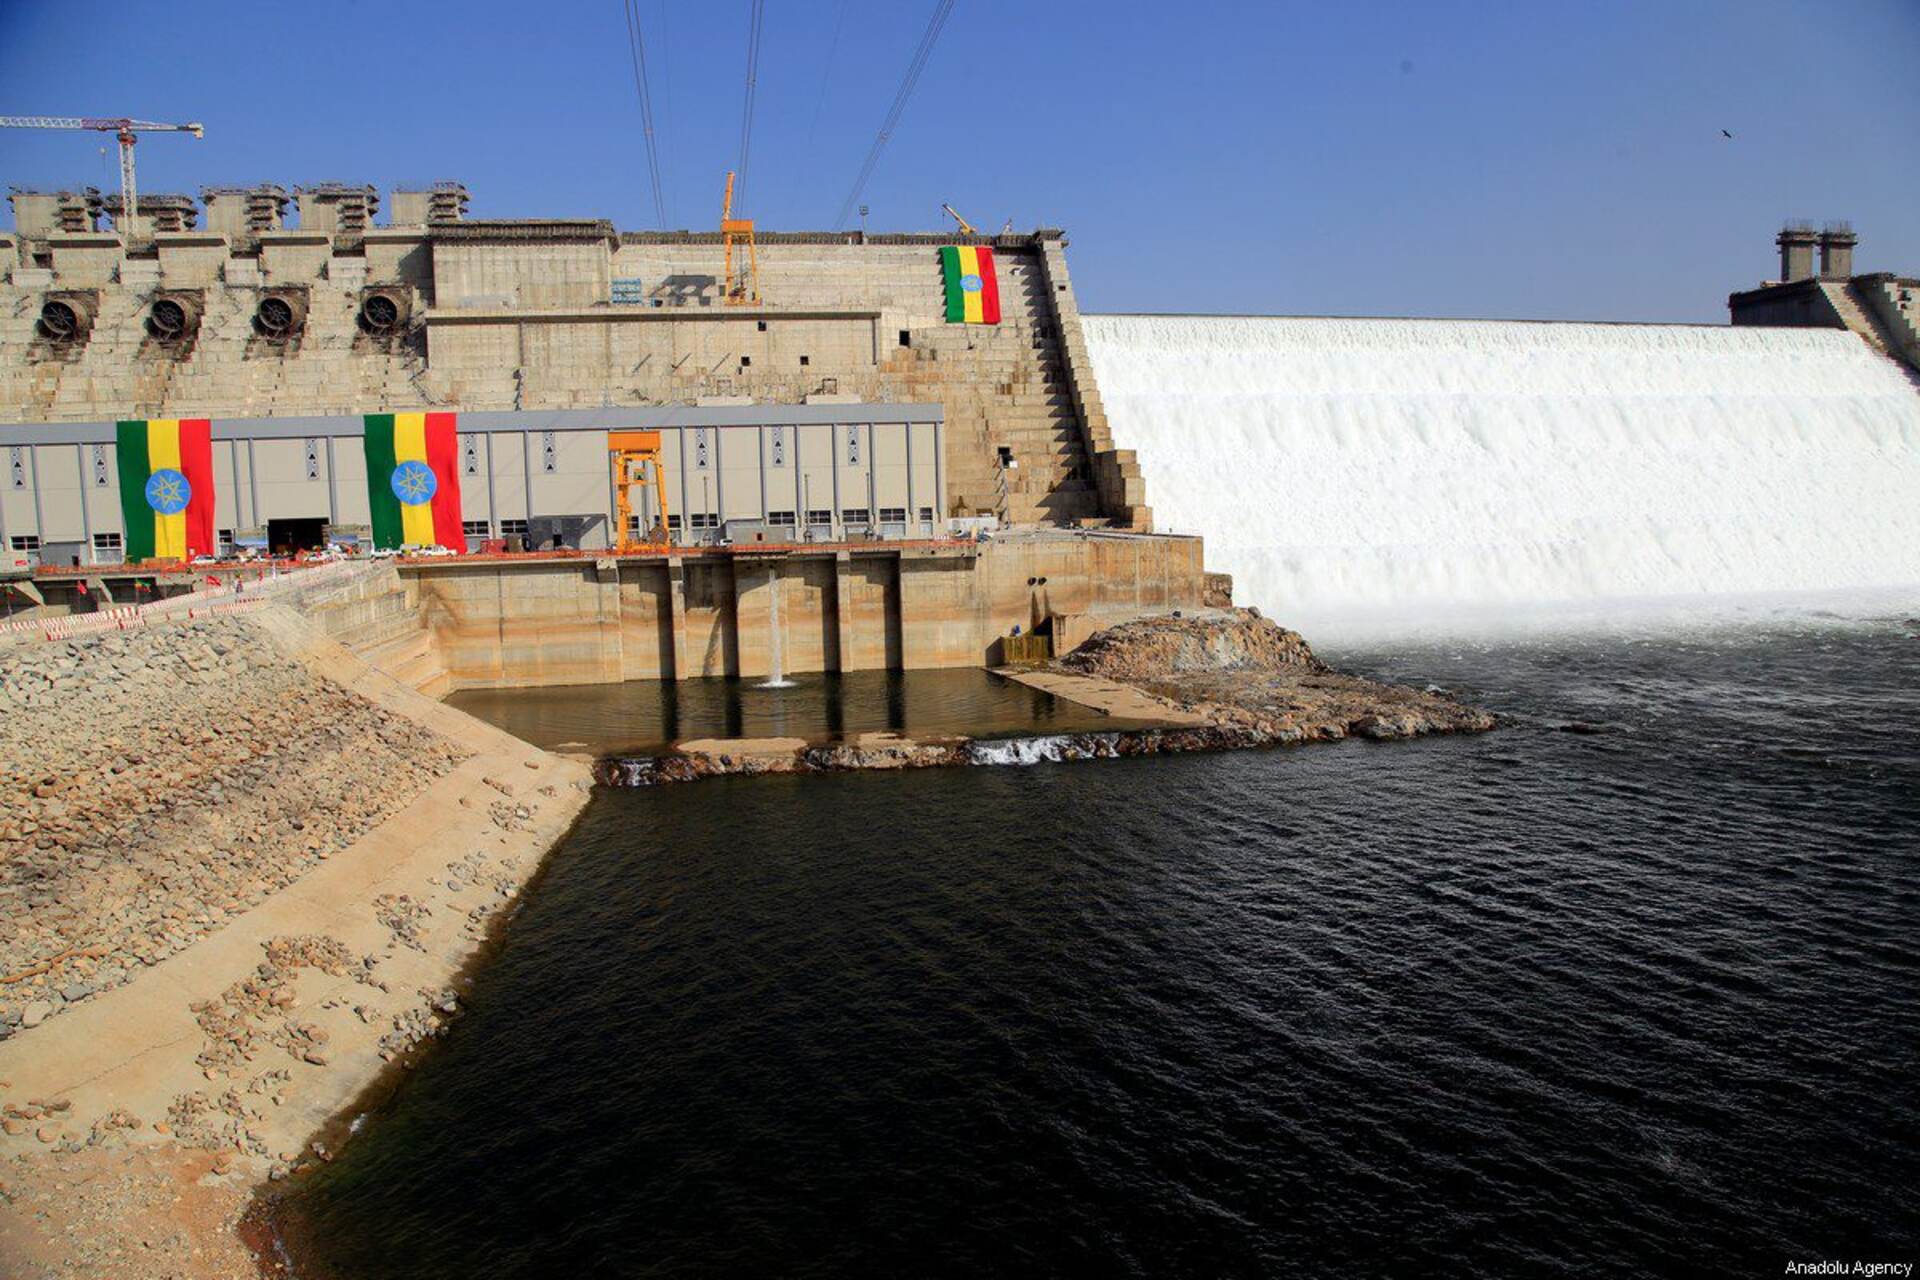 Etiopien: GERD dam